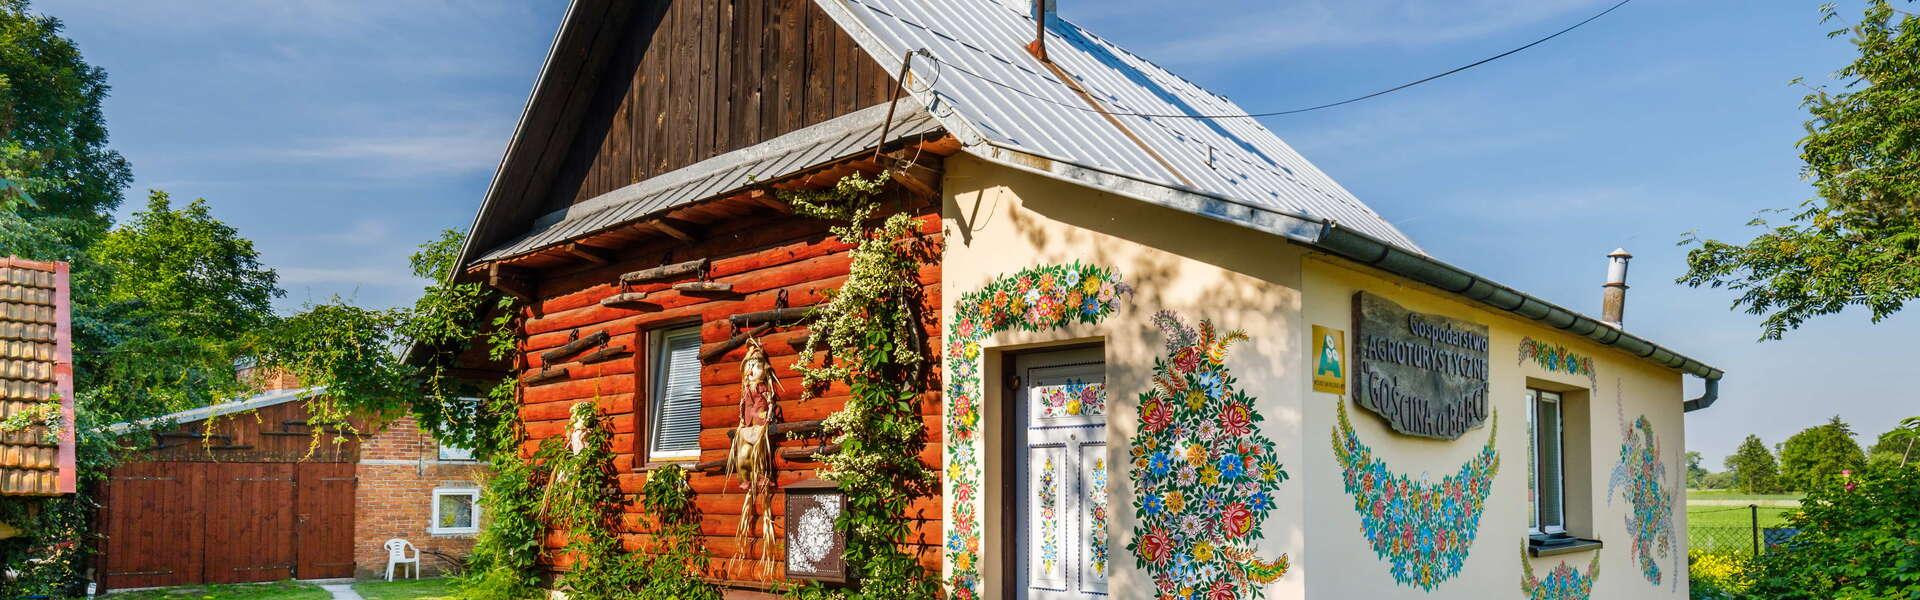 Haus mit gemalten Blumen